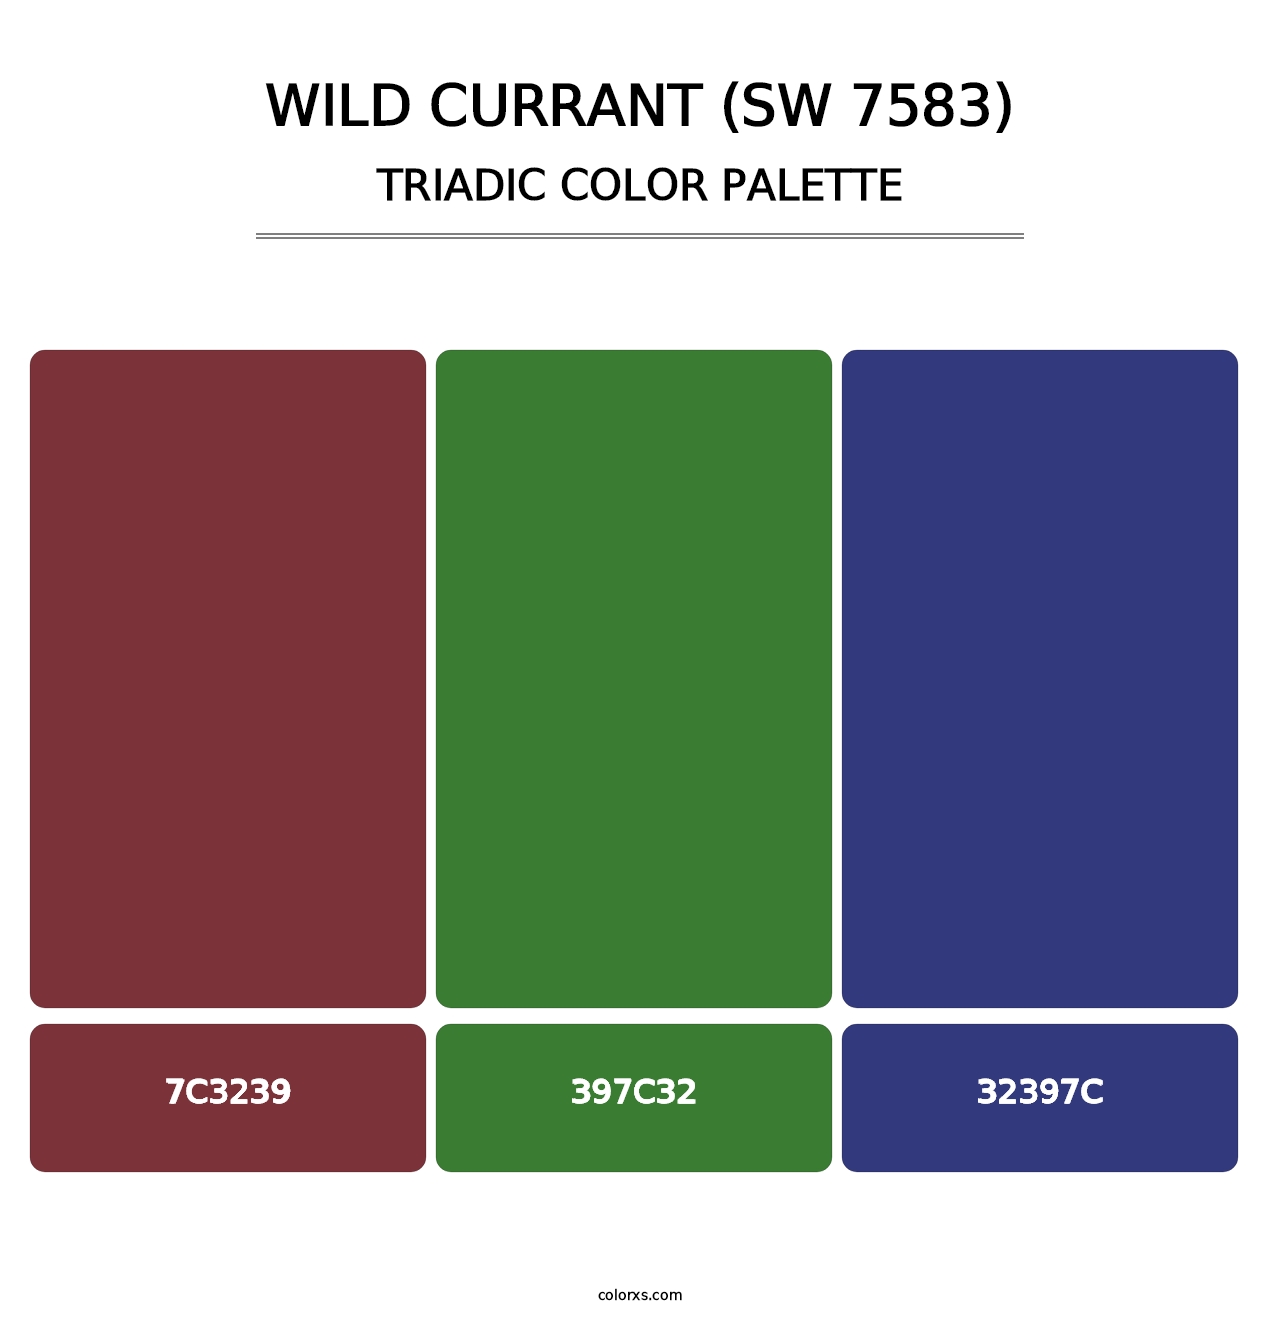 Wild Currant (SW 7583) - Triadic Color Palette